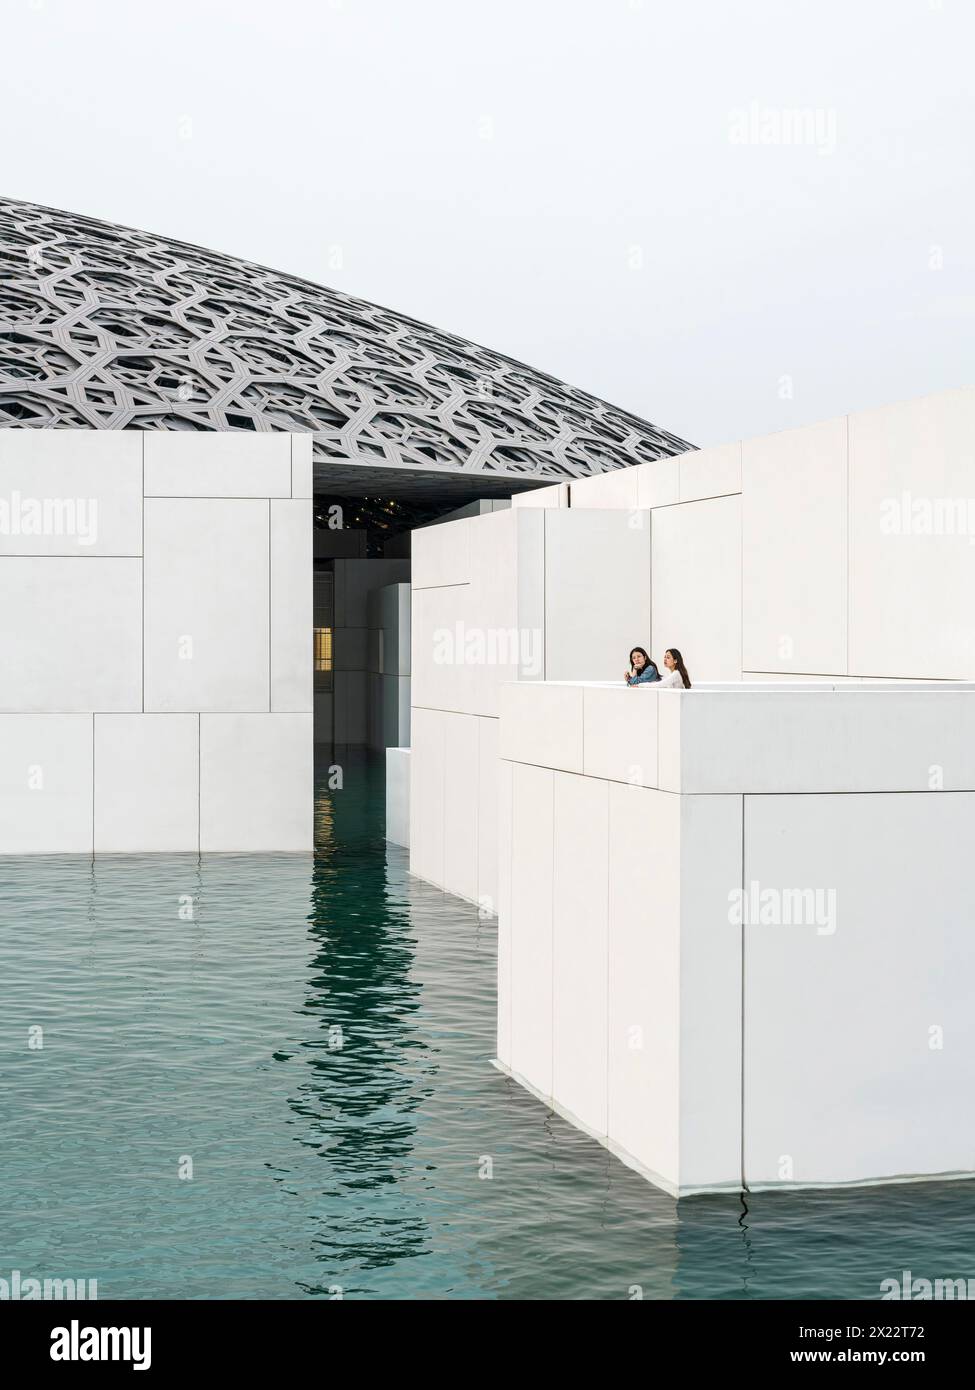 Skulpturale Würfelvolumina im Wasser mit Kuppeldach. Louvre Abu Dhabi, Abu Dhabi, Vereinigte Arabische Emirate. Architekt: Jean Nouvel, 2017. Stockfoto